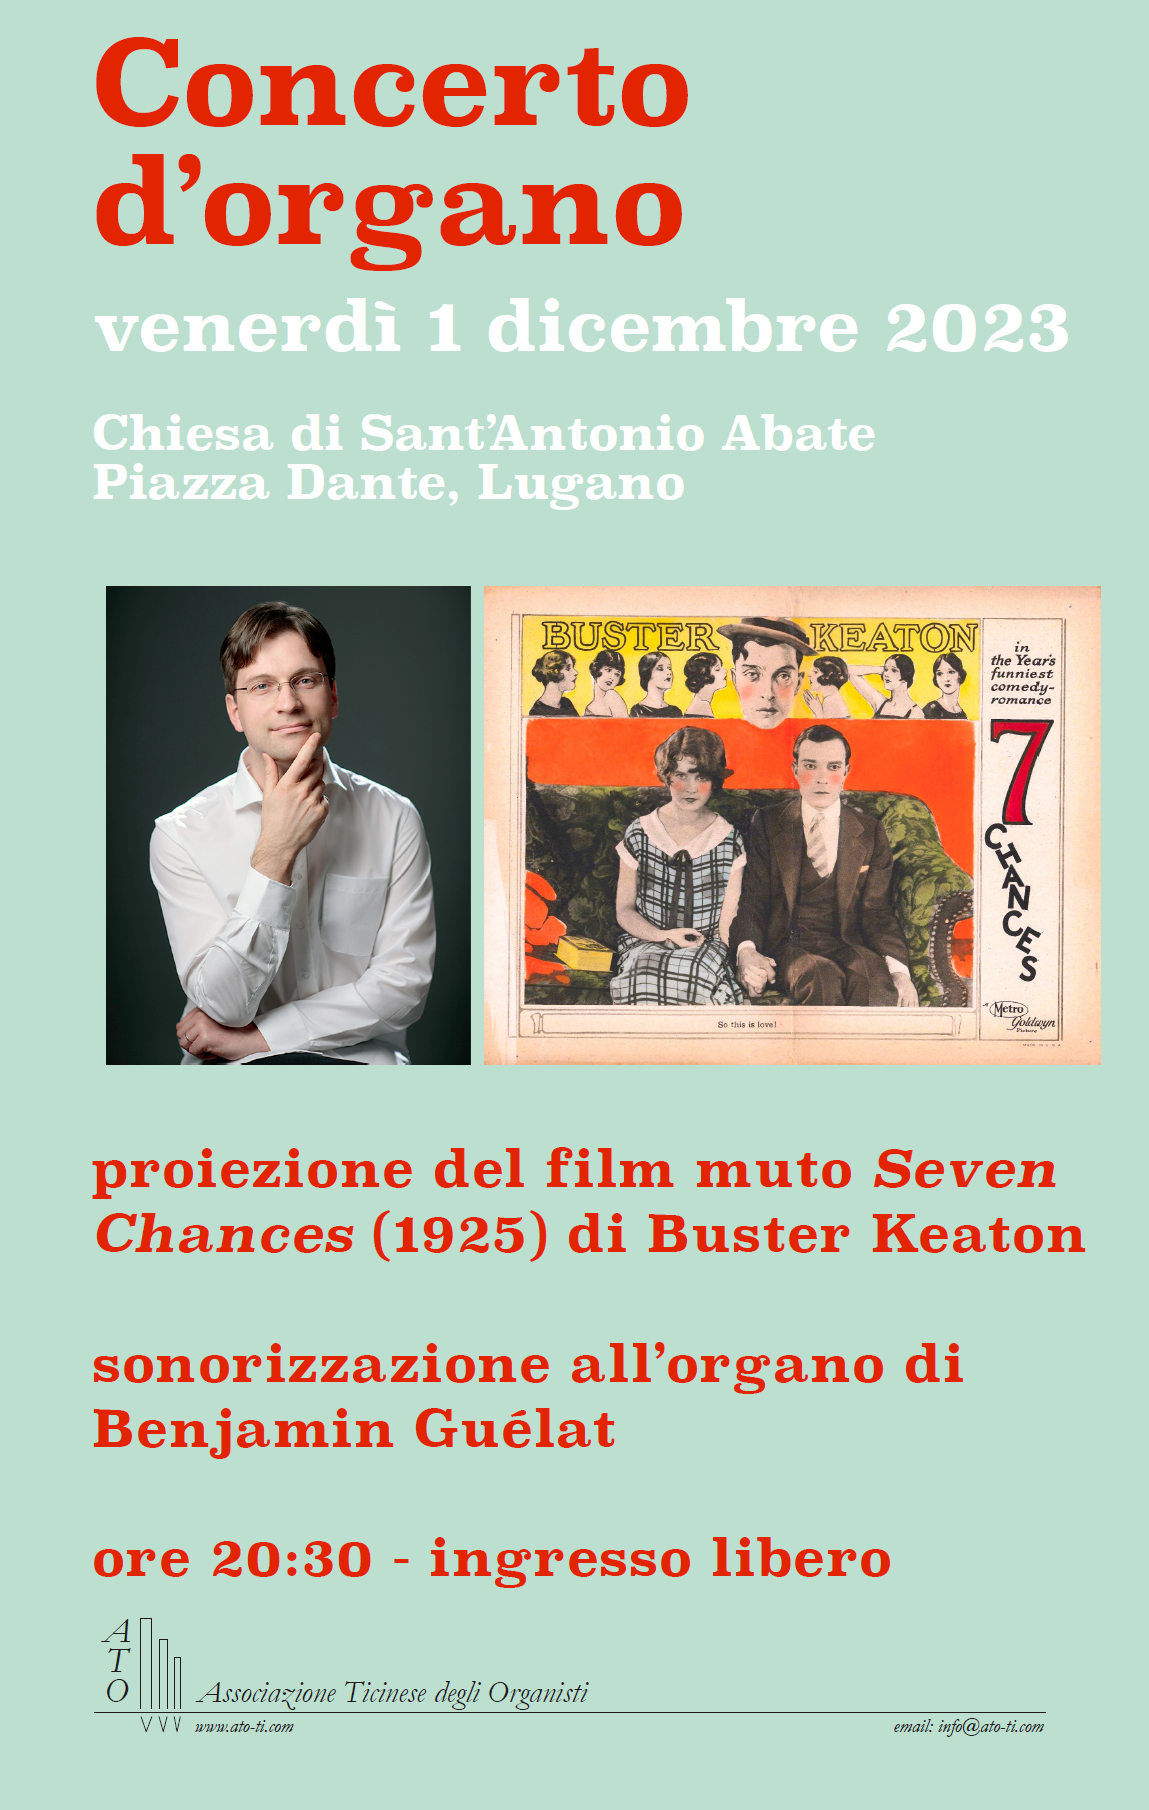 Concerto con sonorizzazione del Film muto Seven Cahnces di Buster Keaton